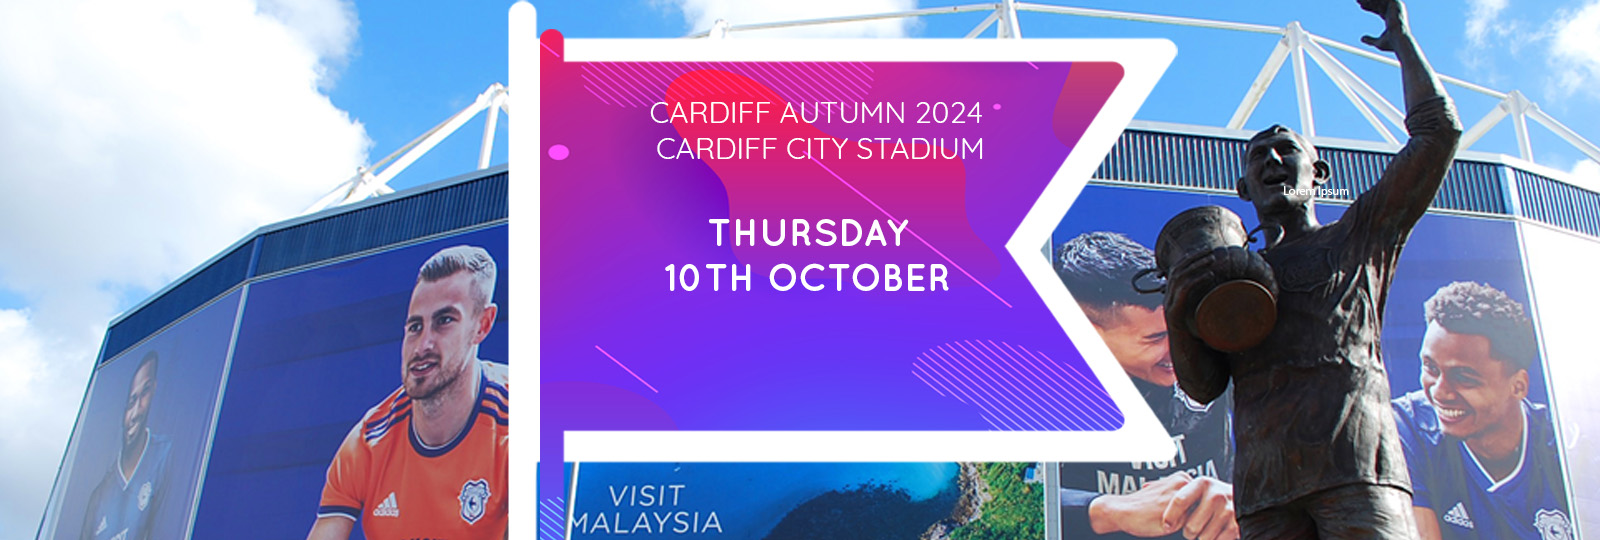 Cardiff Autumn 2024 Fair